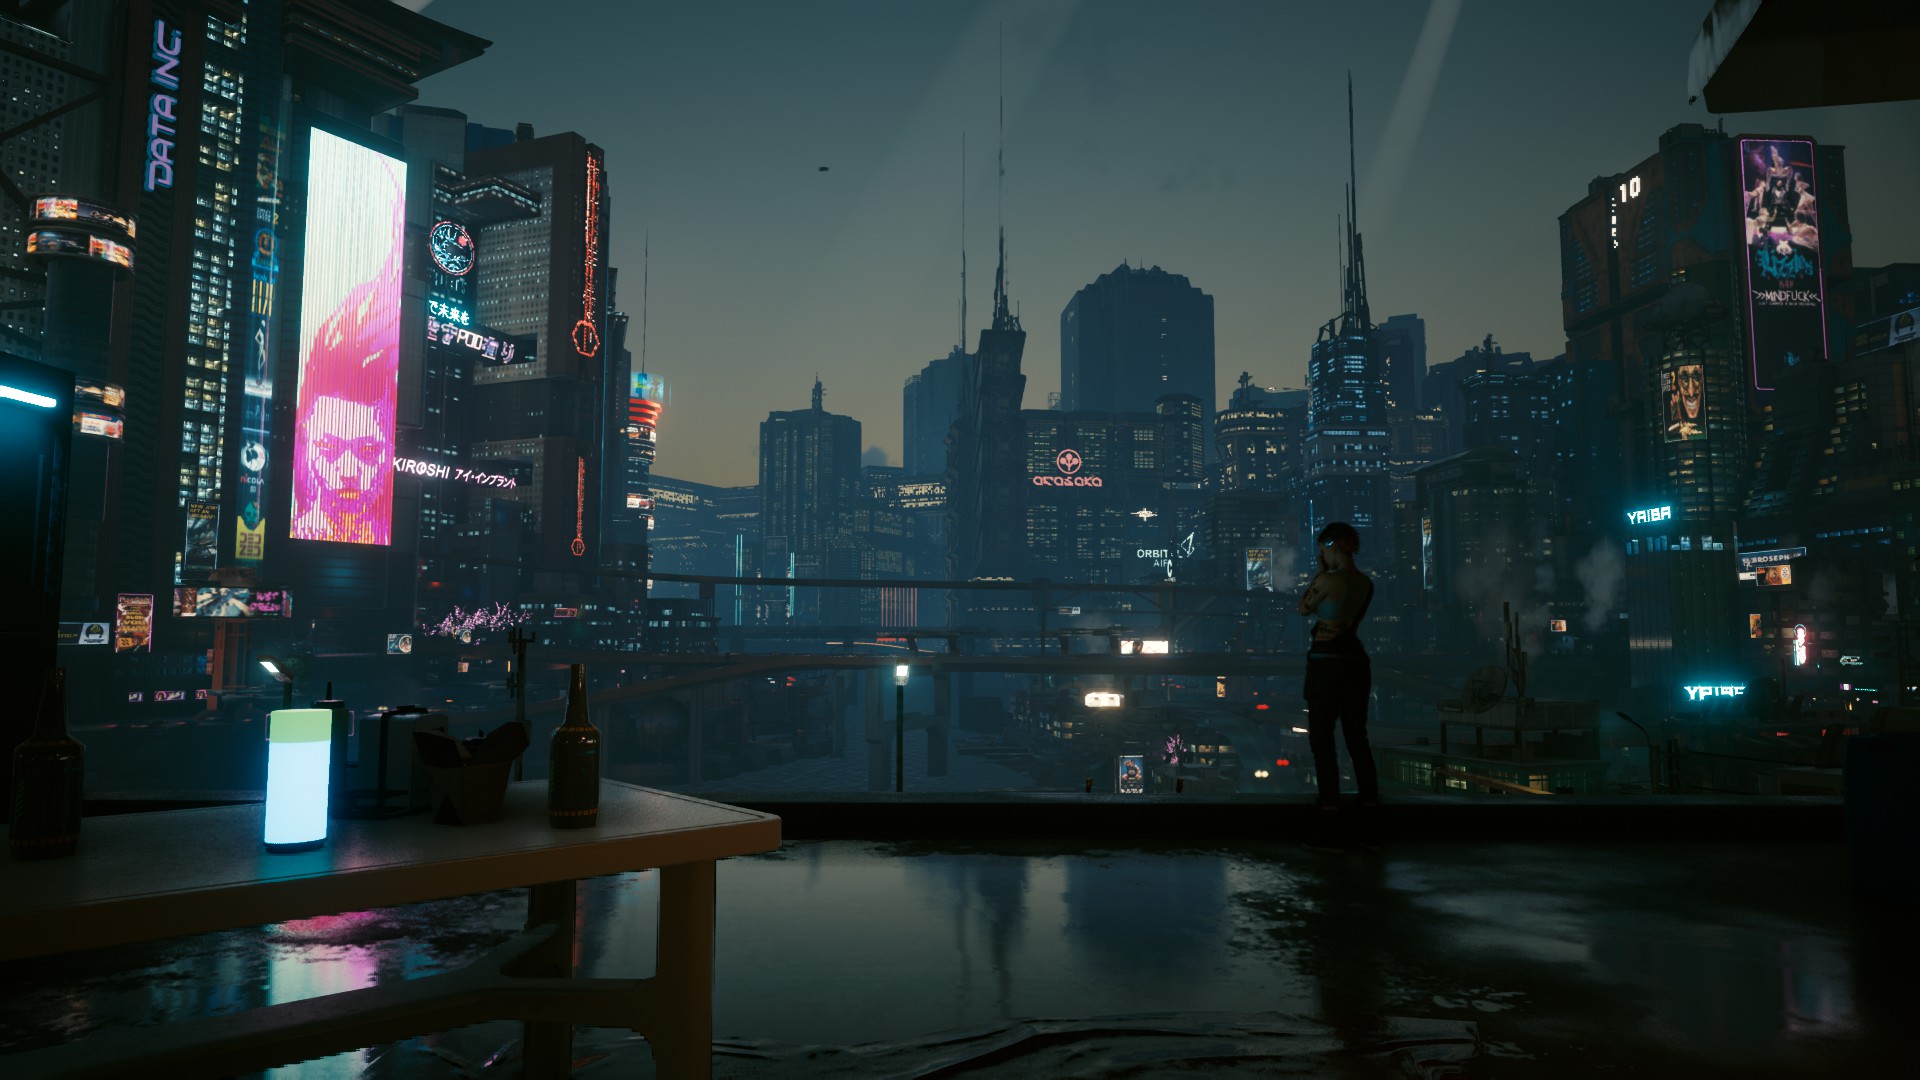 Night City Cyberpunk 2077 4k